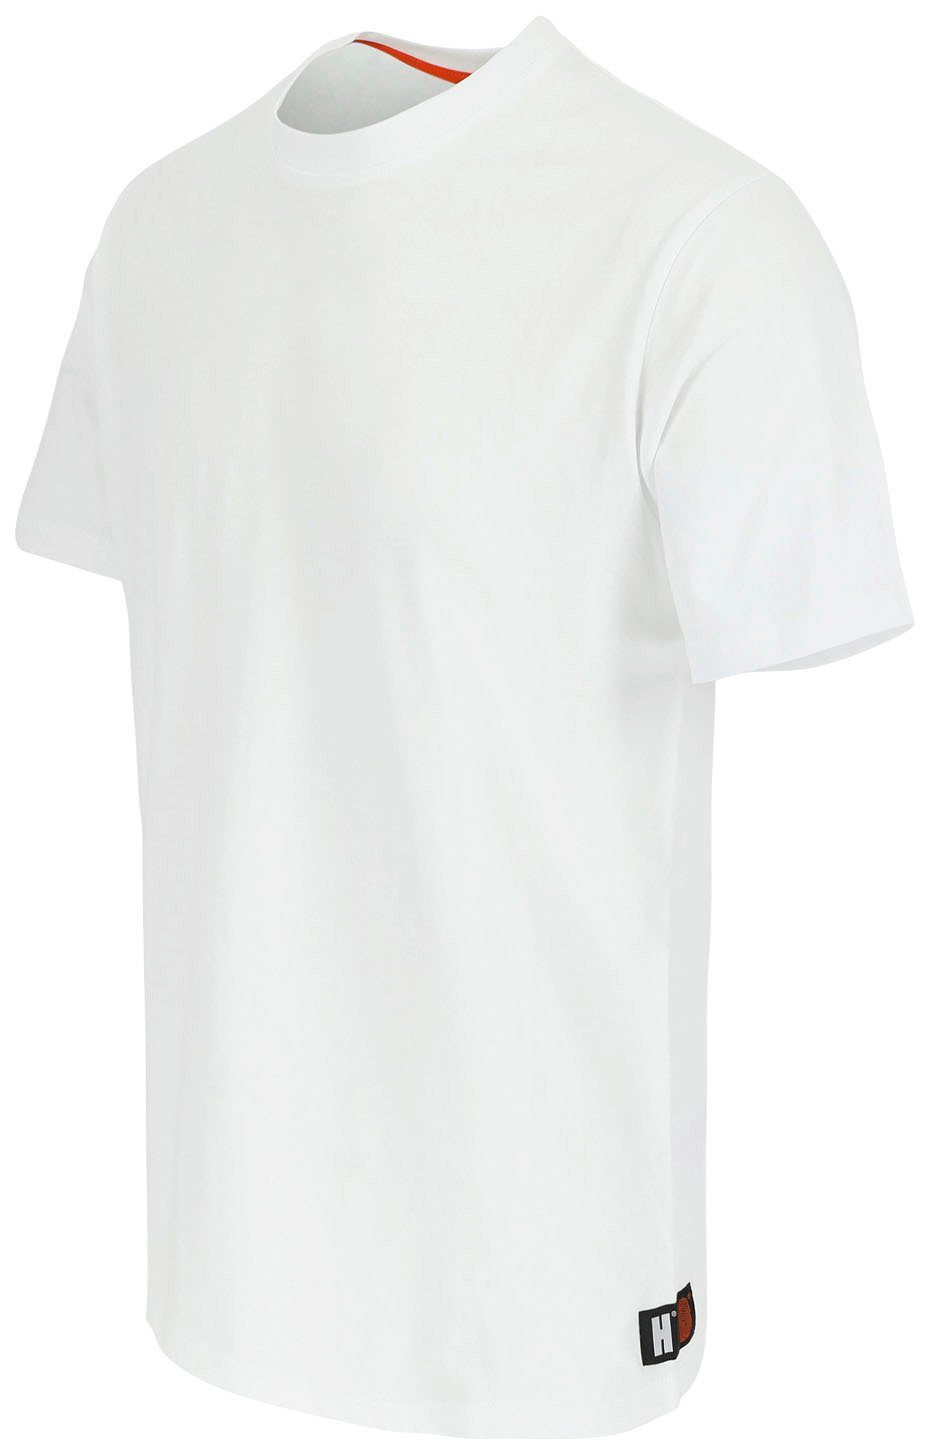 Herock T-Shirt Callius T-Shirt kurze Rippstrickkragen Ärmel, kurze Ärmel weiß Rundhalsausschnitt, Herock®-Aufdruck